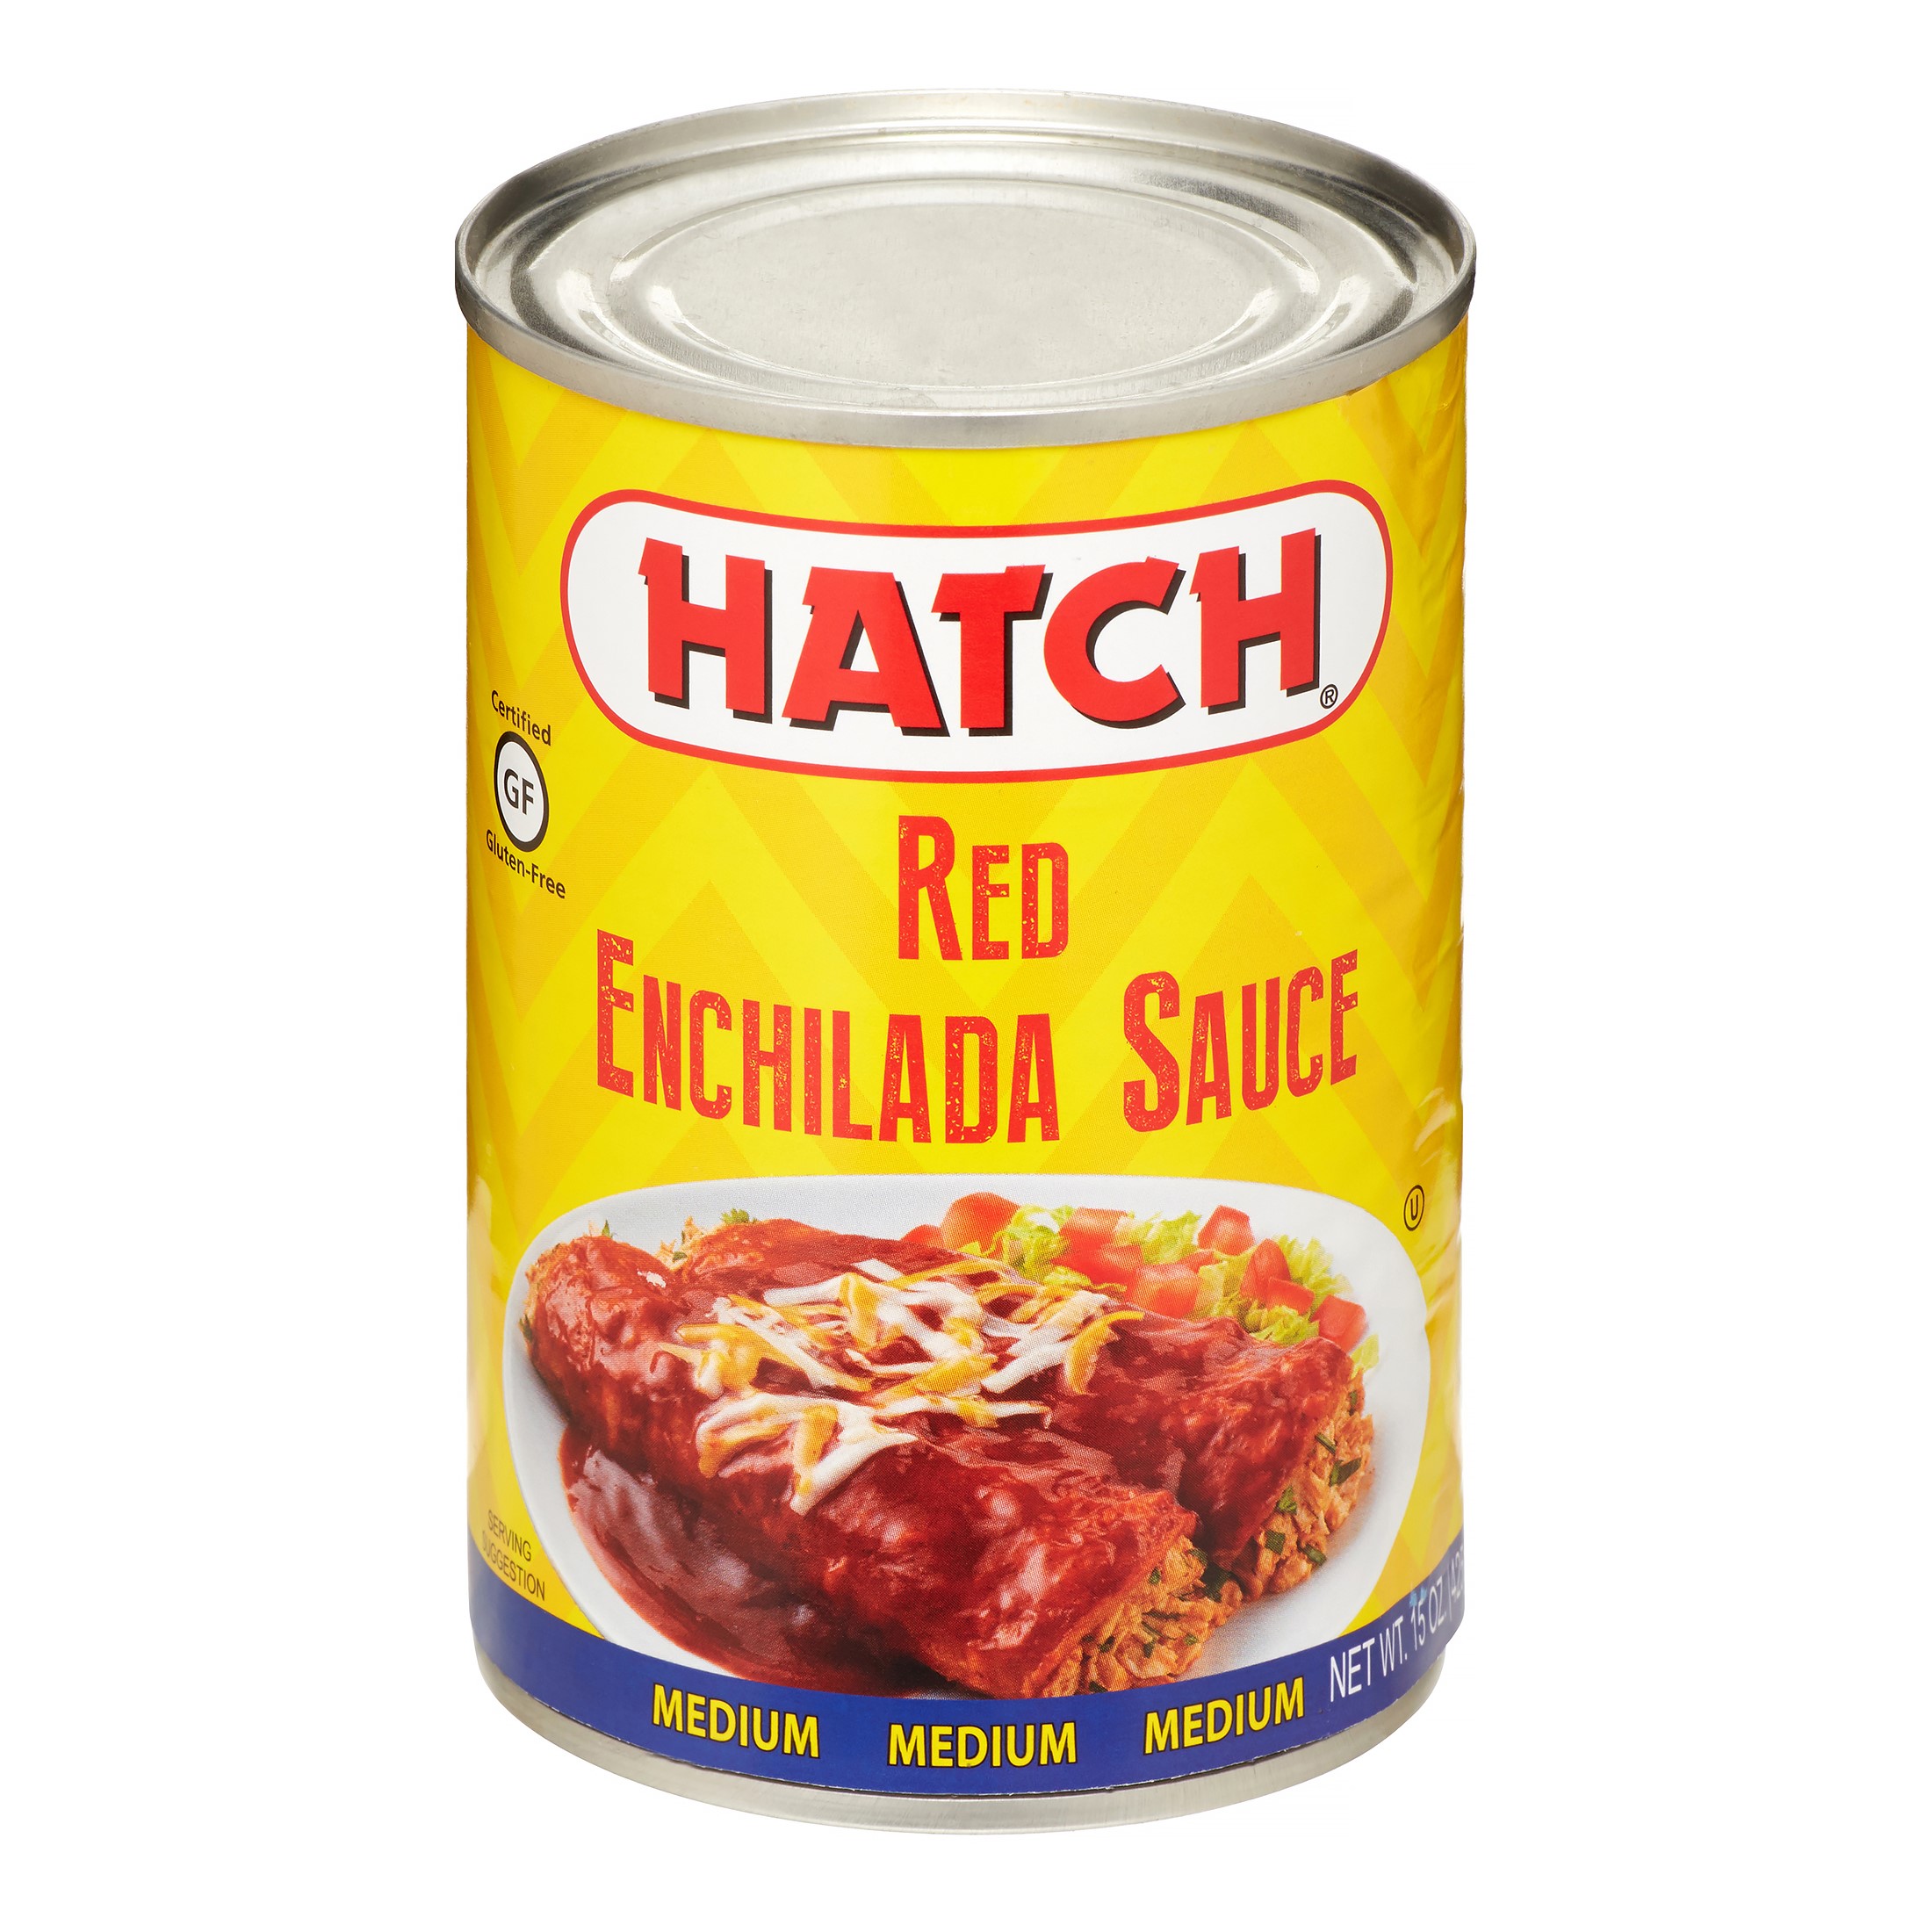 HATCH, SAUCE ENCHLDA RED MED, 15 oz, (Pack of 3) - image 2 of 2